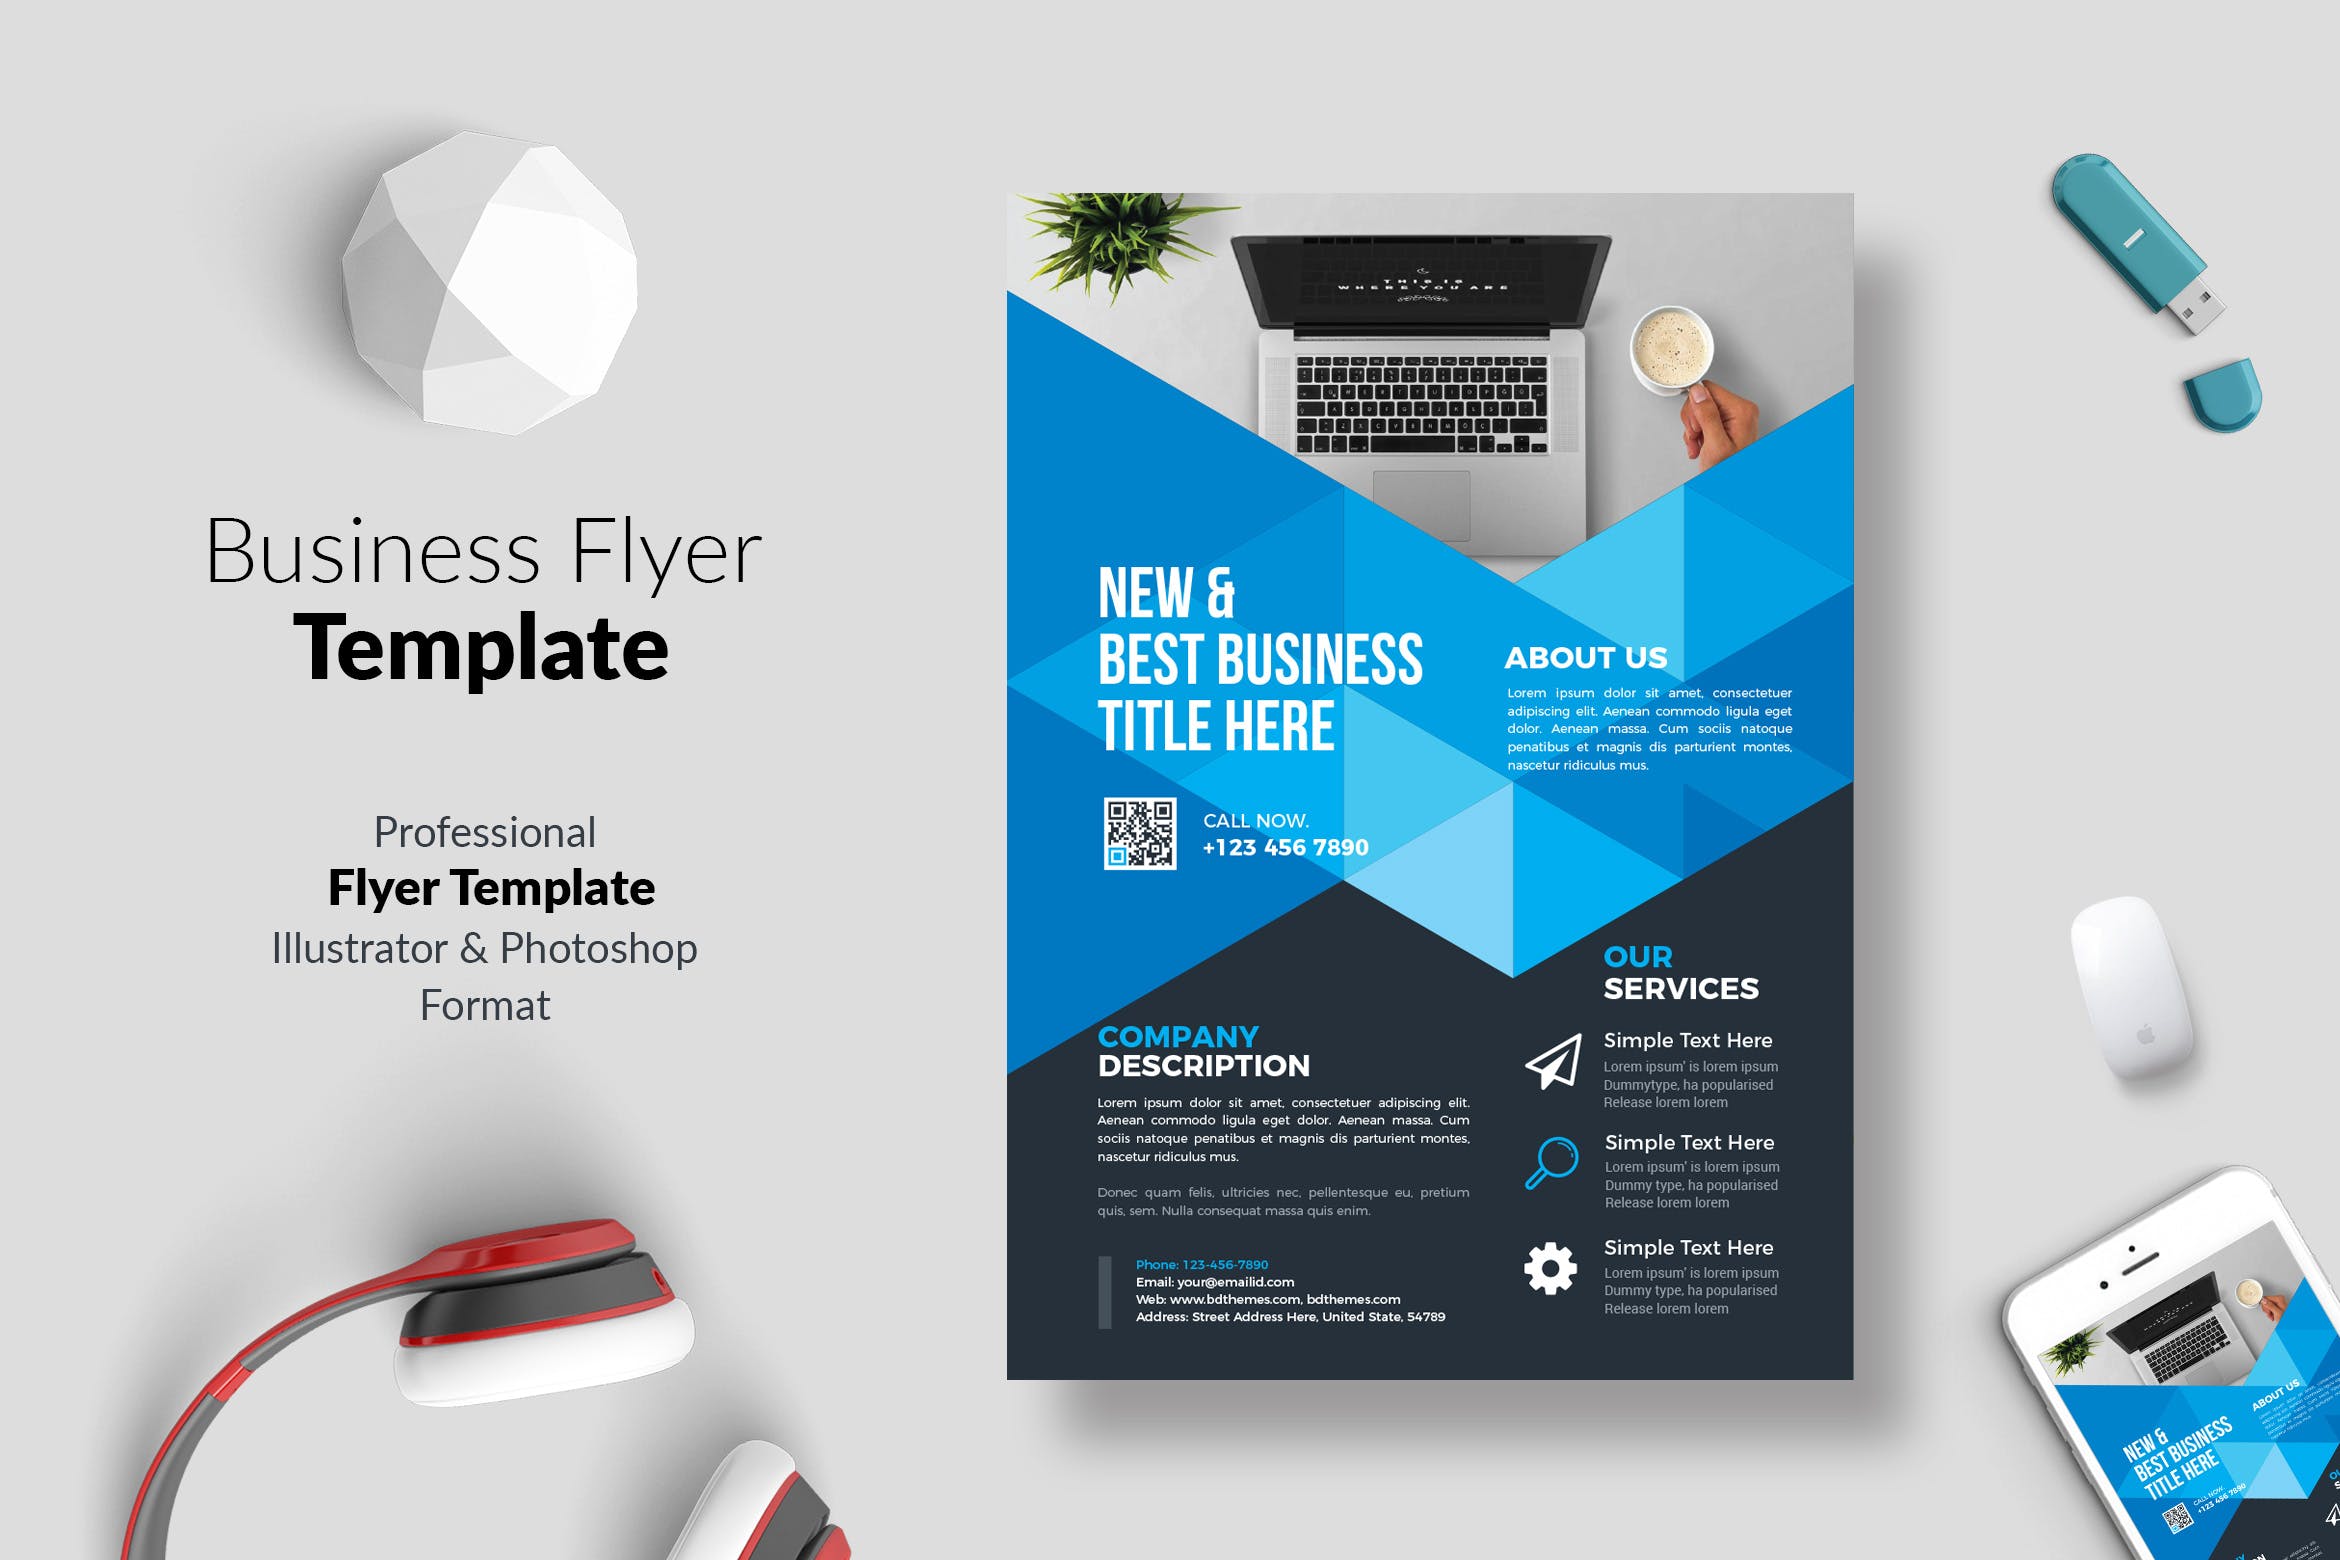 商务风格企业宣传传单设计模板04 Business Flyer Template 04插图